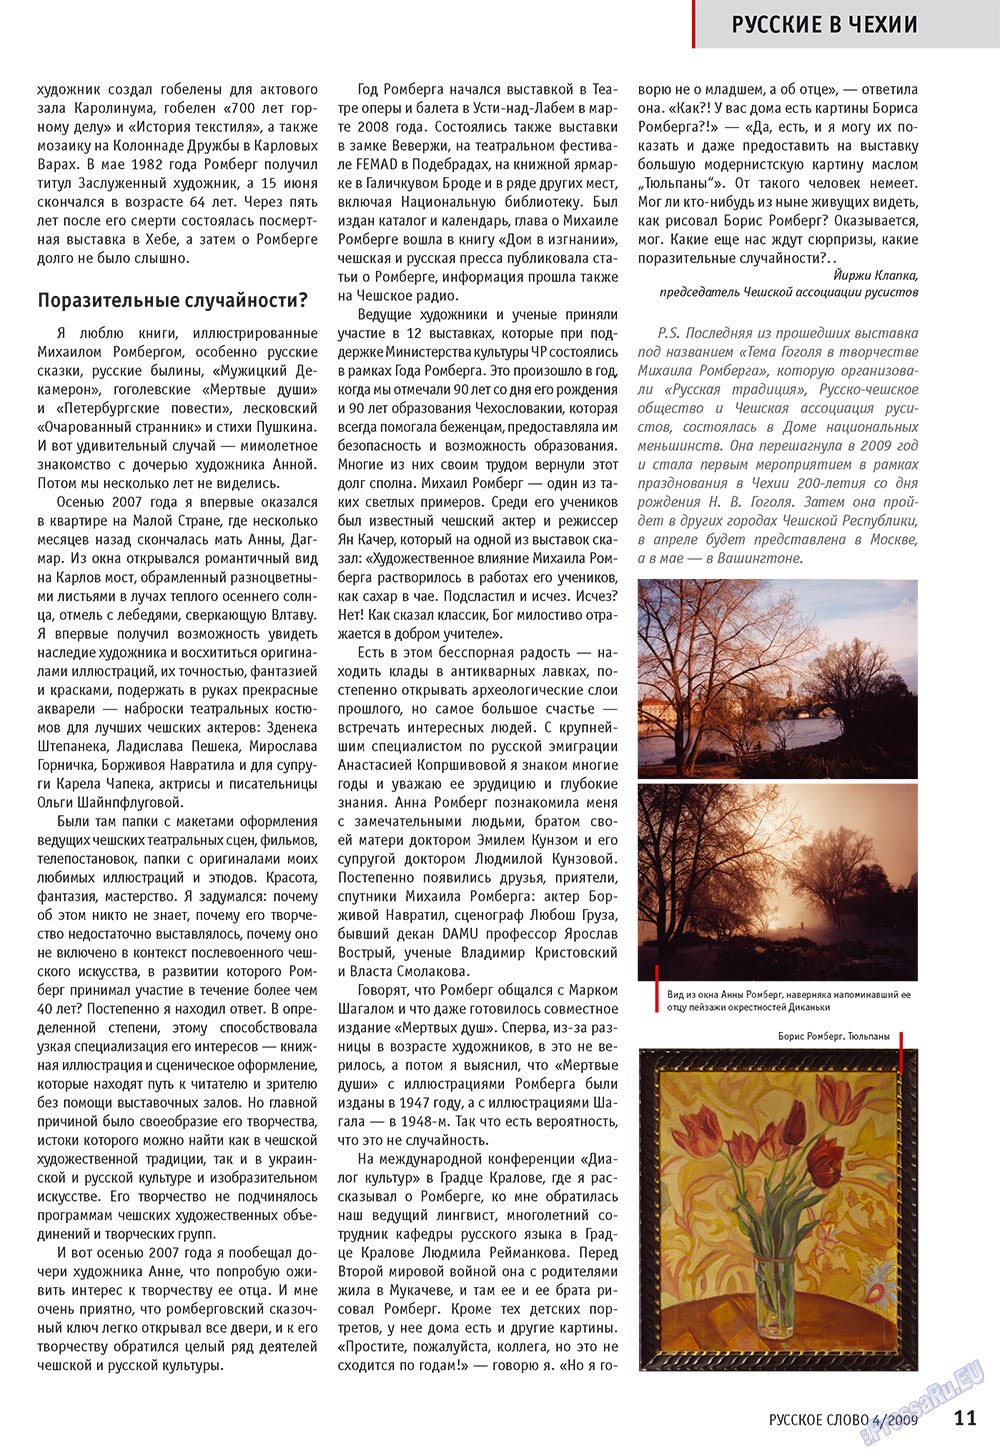 Русское слово, журнал. 2009 №4 стр.13